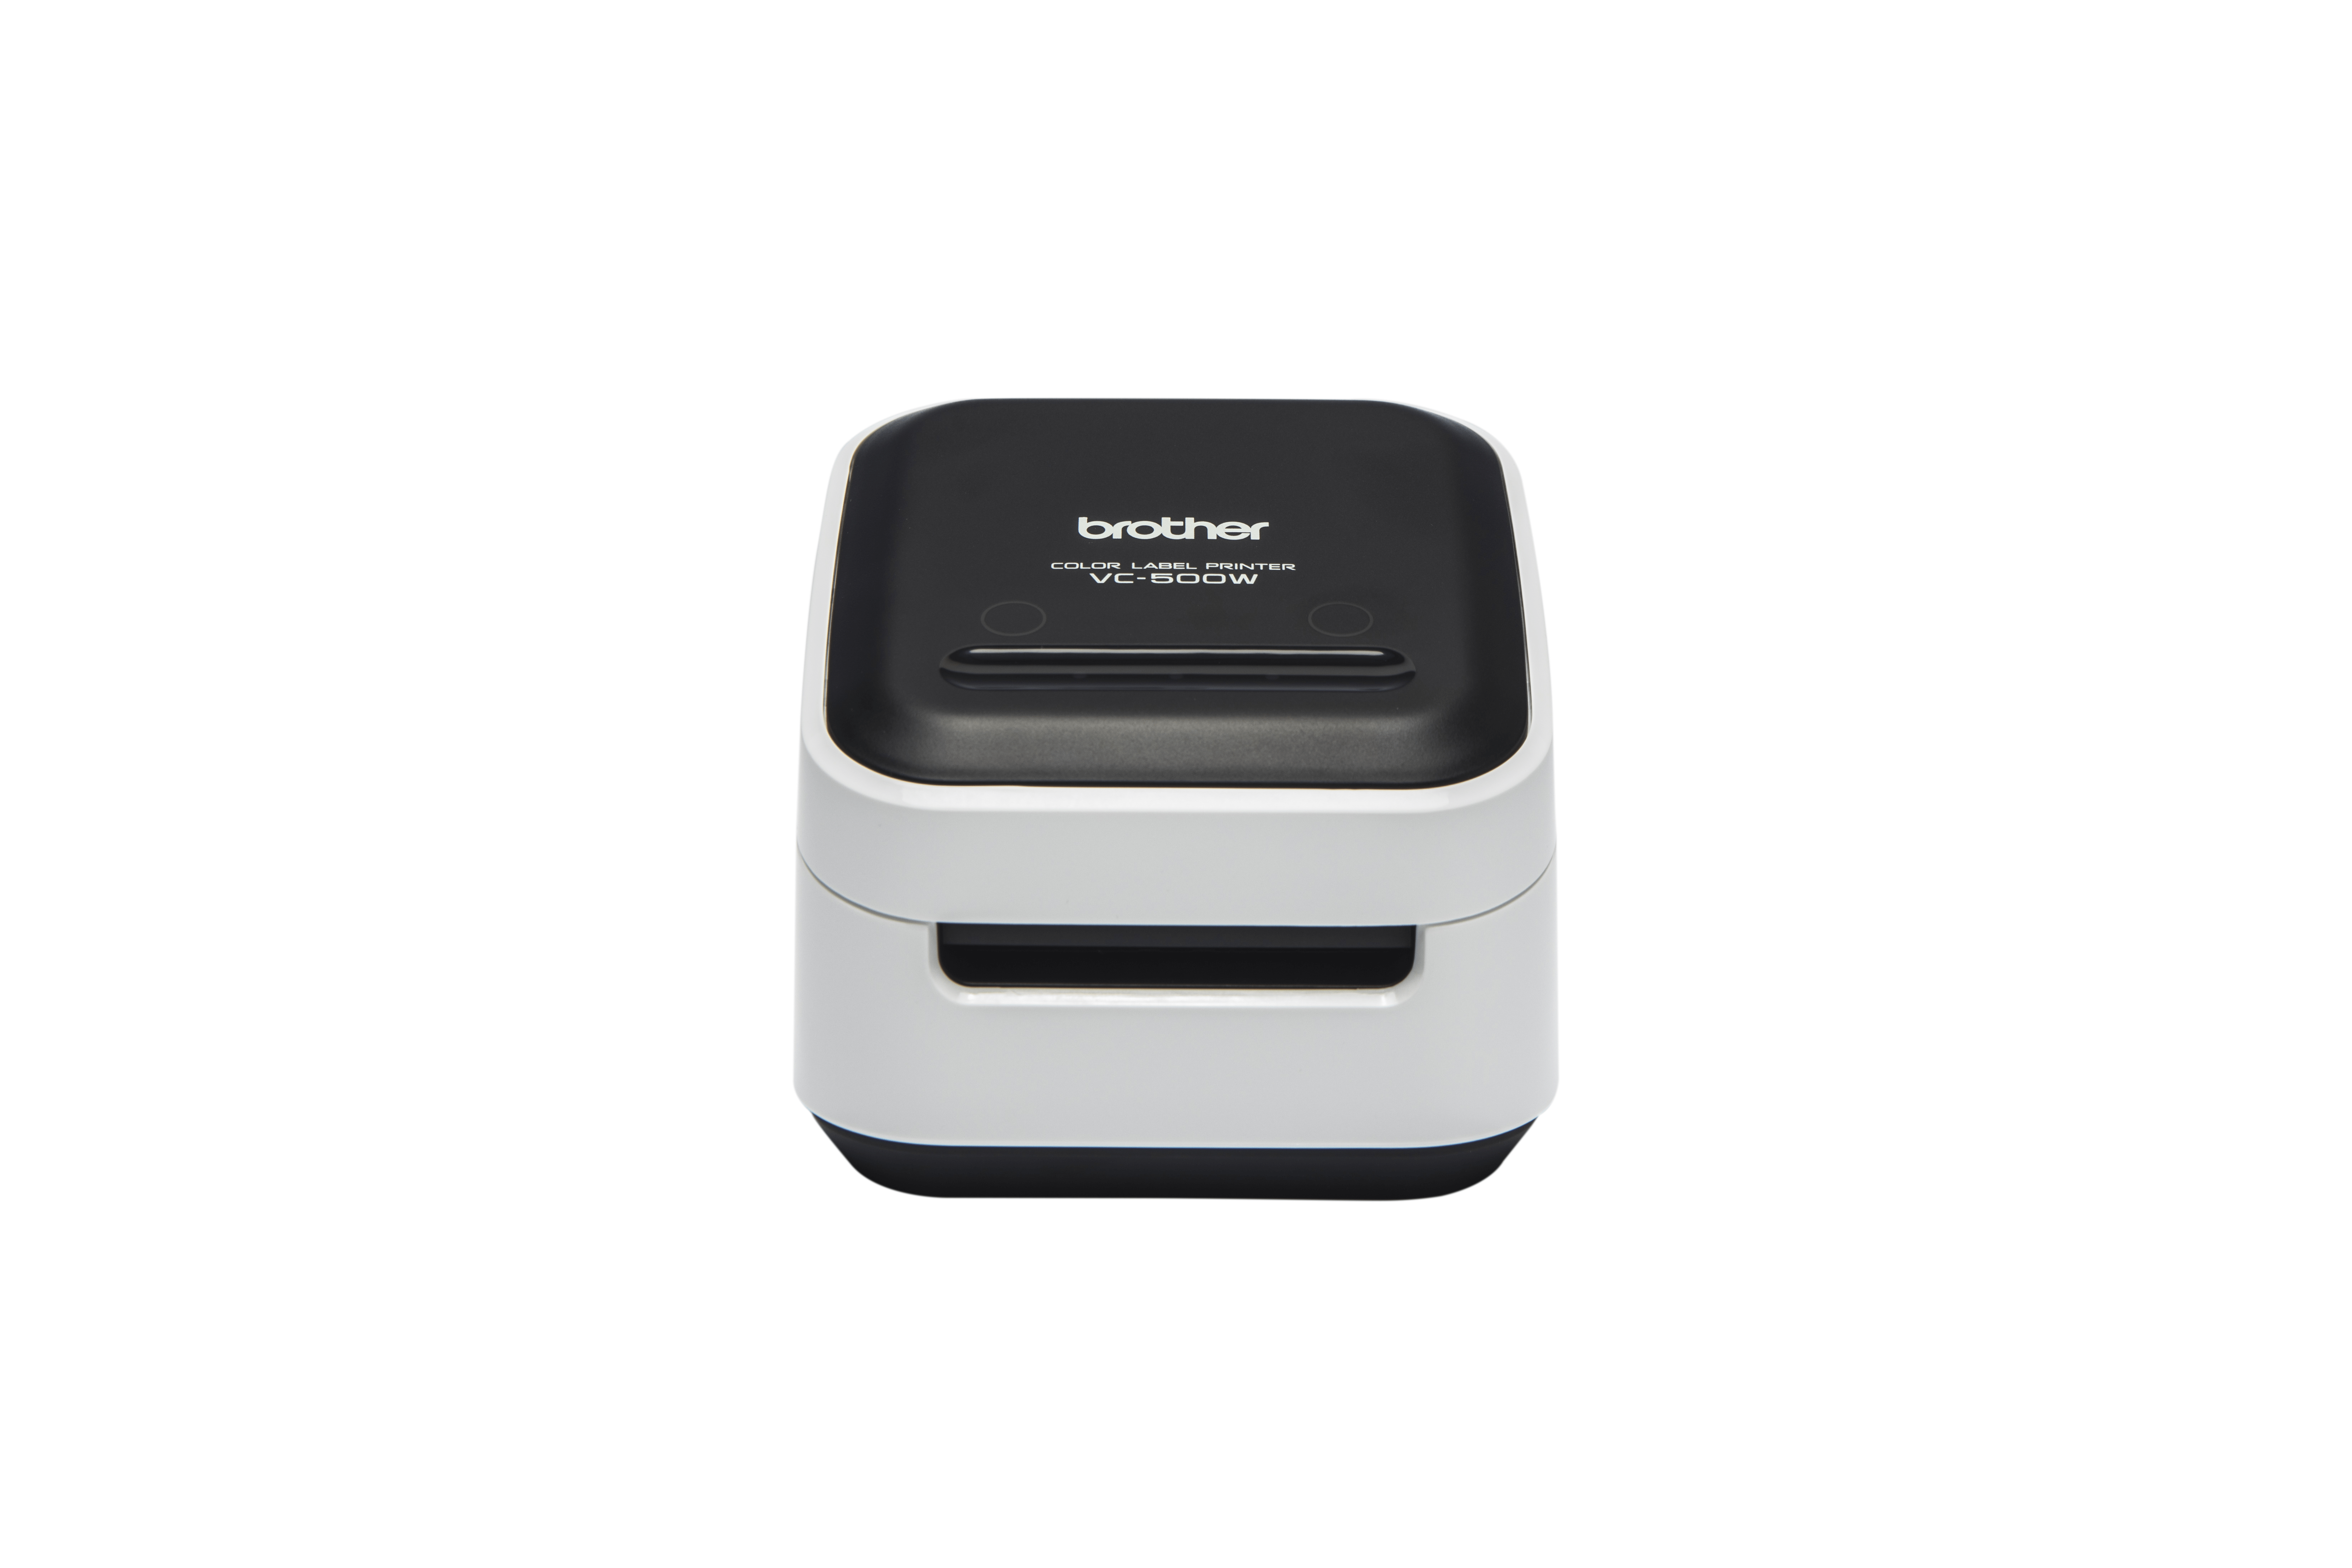 VC-500W kleurenlabelprinter voor kantoor of design- en hobbyprojecten 